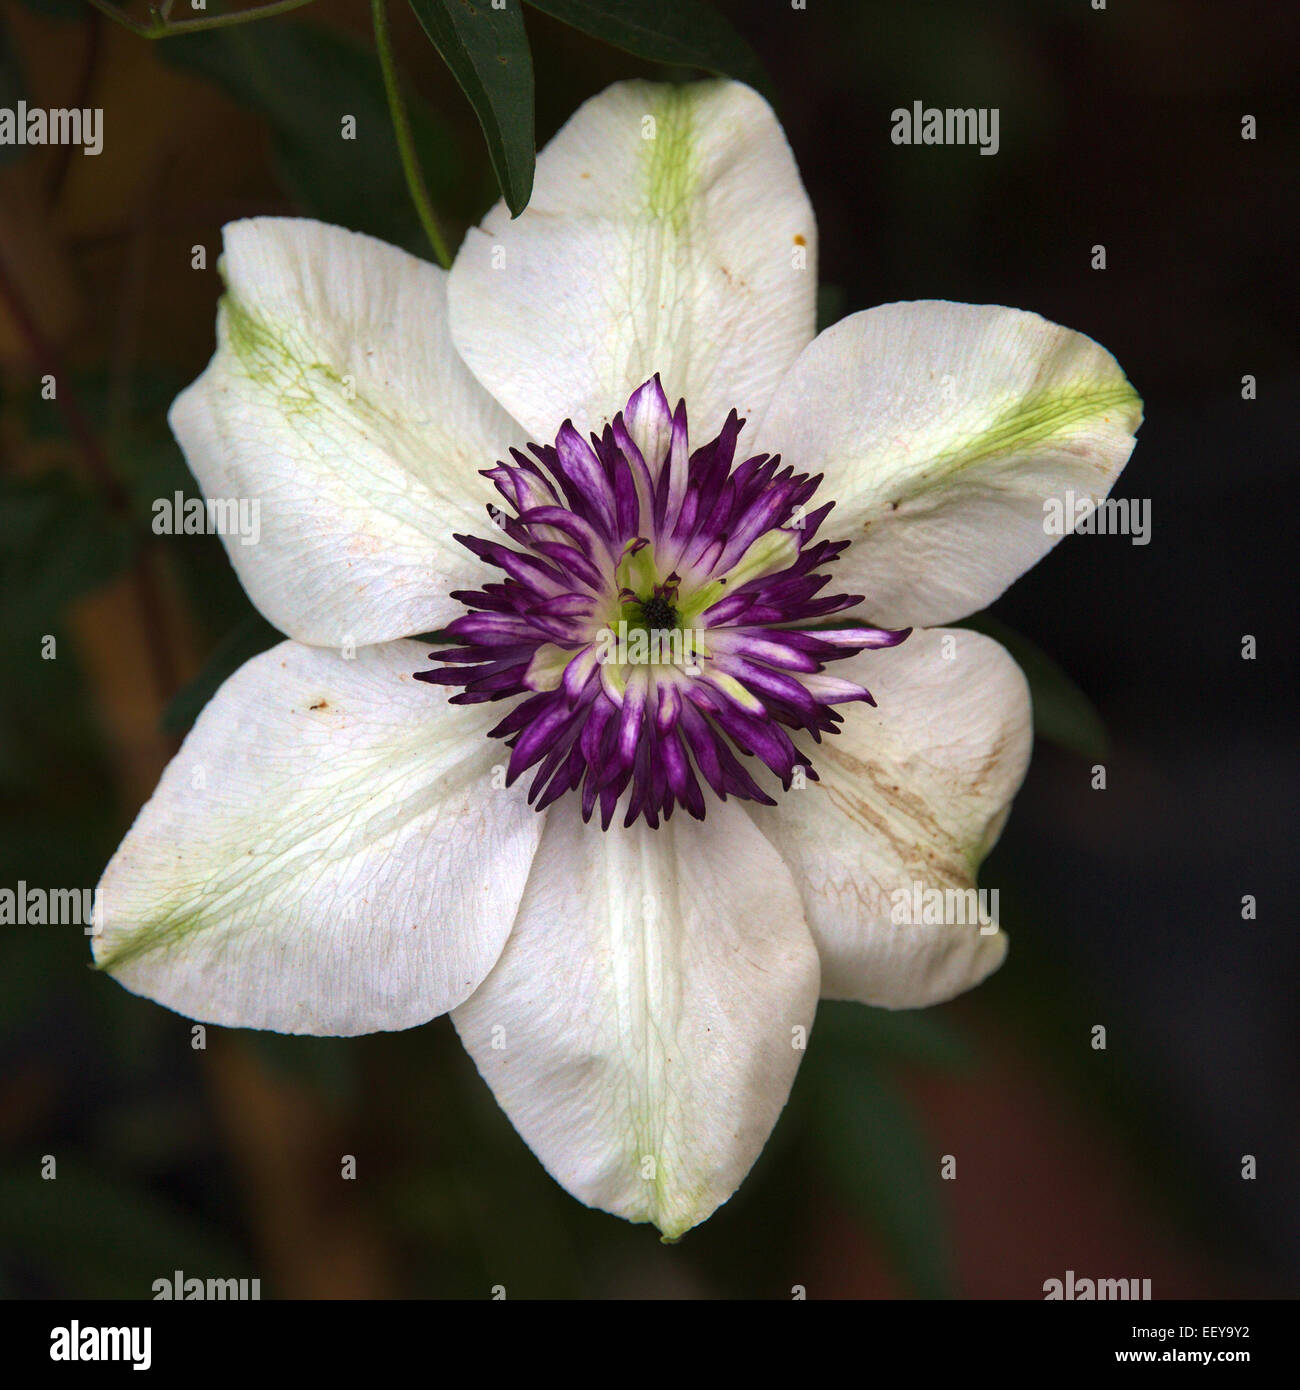 Belle fleur clematis white purple closeup Banque D'Images